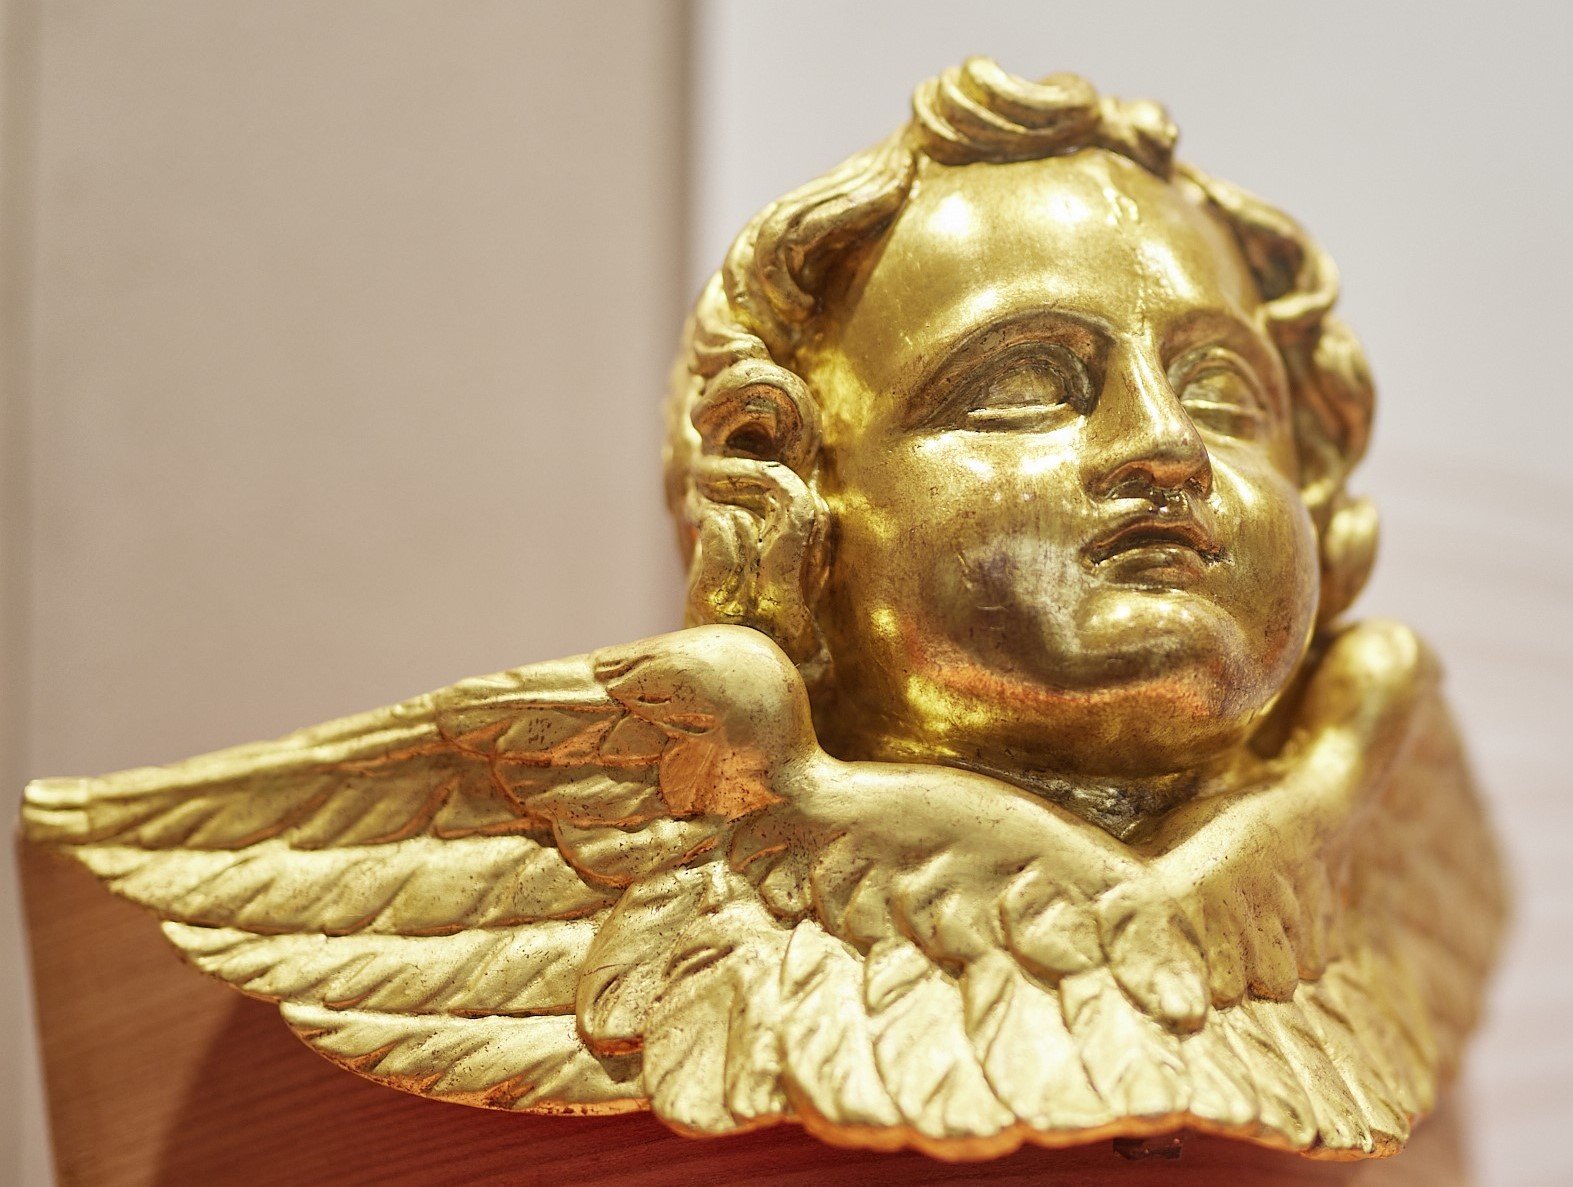 restaurierter Cherub, vergoldeter Engelskopf mit angesetzten Flügeln (Museum der Stadt Bad Neuenahr-Ahrweiler RR-P)